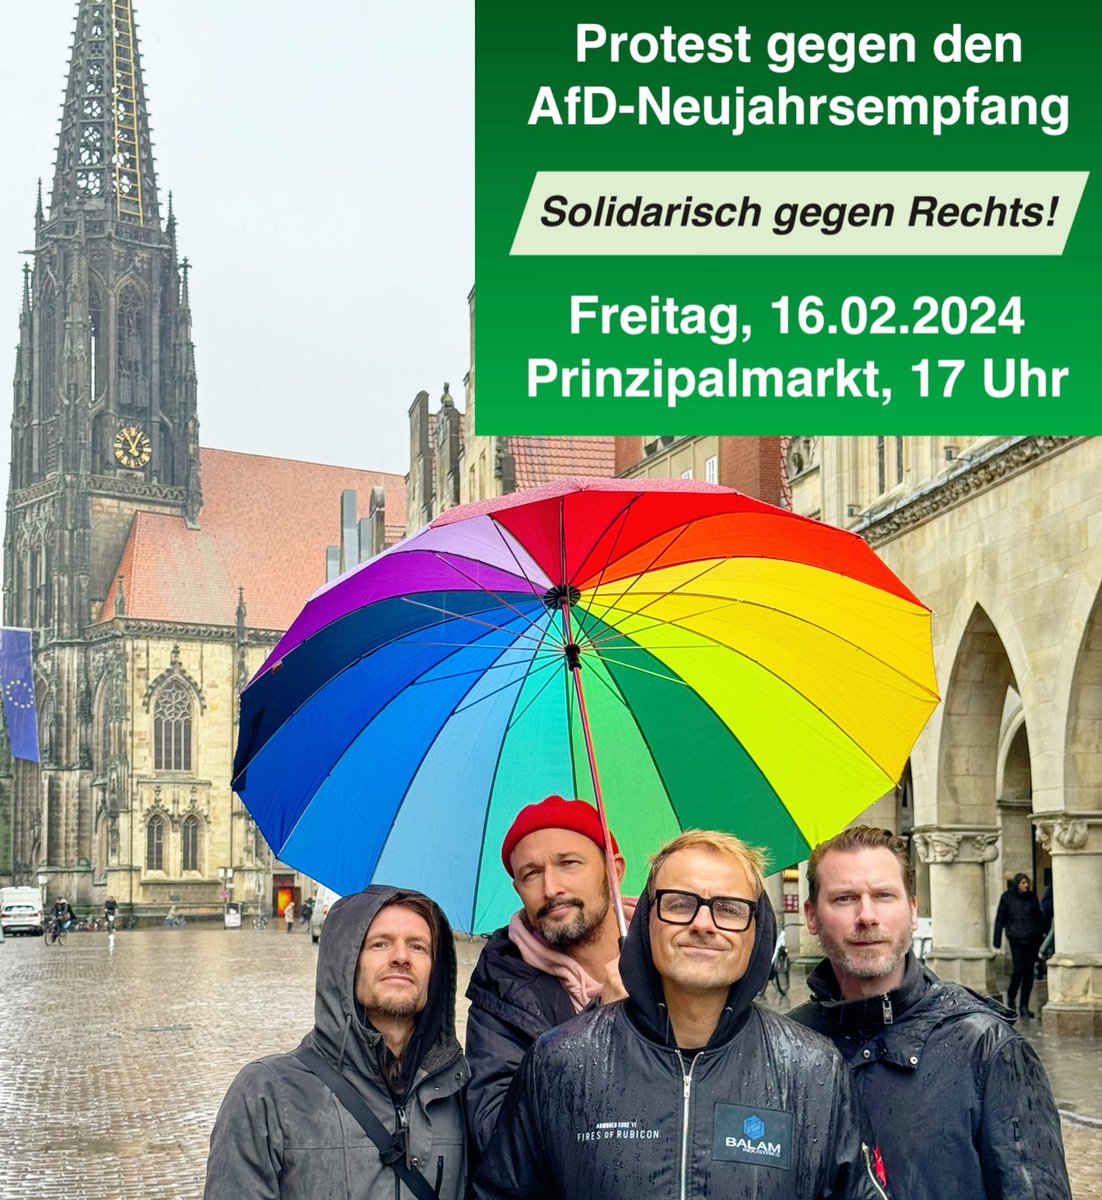 Morgen wird's LAUT: Das Bündnis @ms_keinenmeter lädt zum Protest gegen den AfD Neujahrsempfang. Wir packen die Instrumente ein und sind dabei. Kommt rum, Münster bleibt stabil!